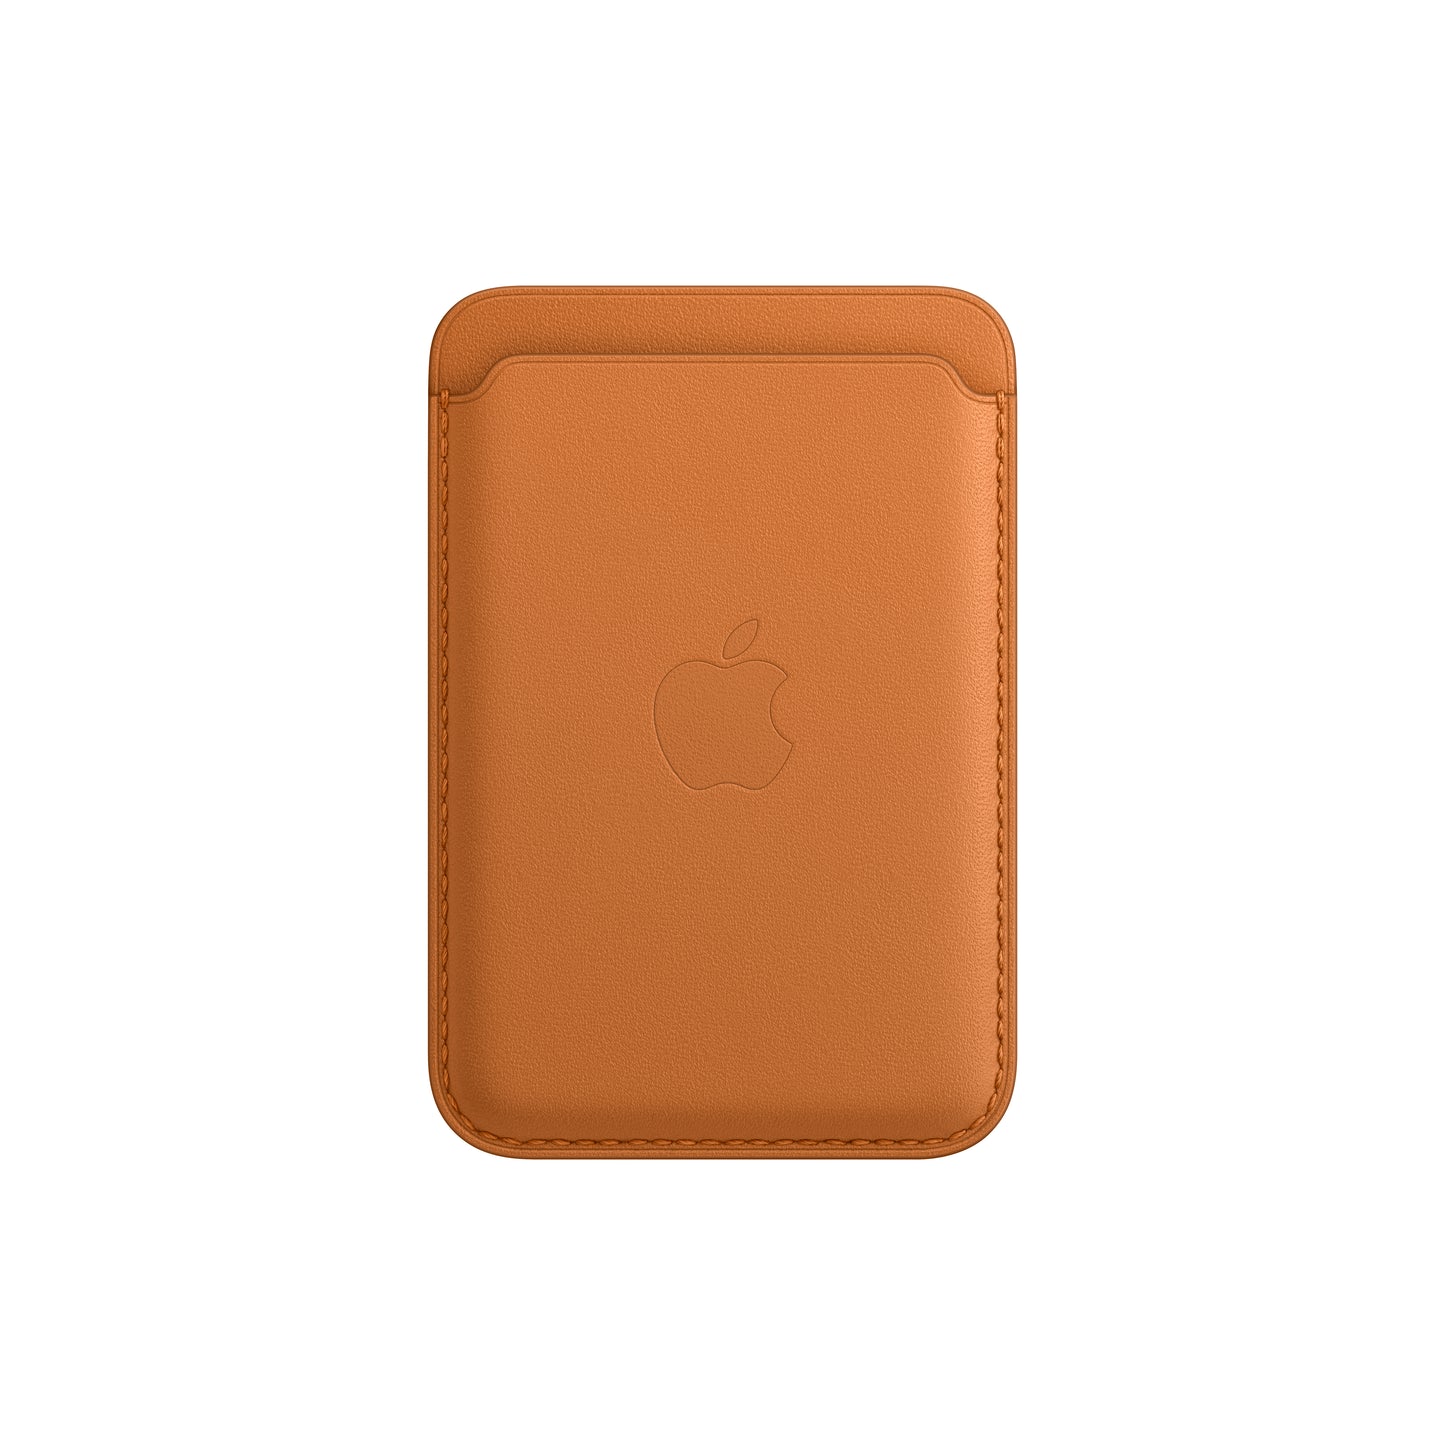 Apple funda de piel con MagSafe para iPhone 13 mini - iShop